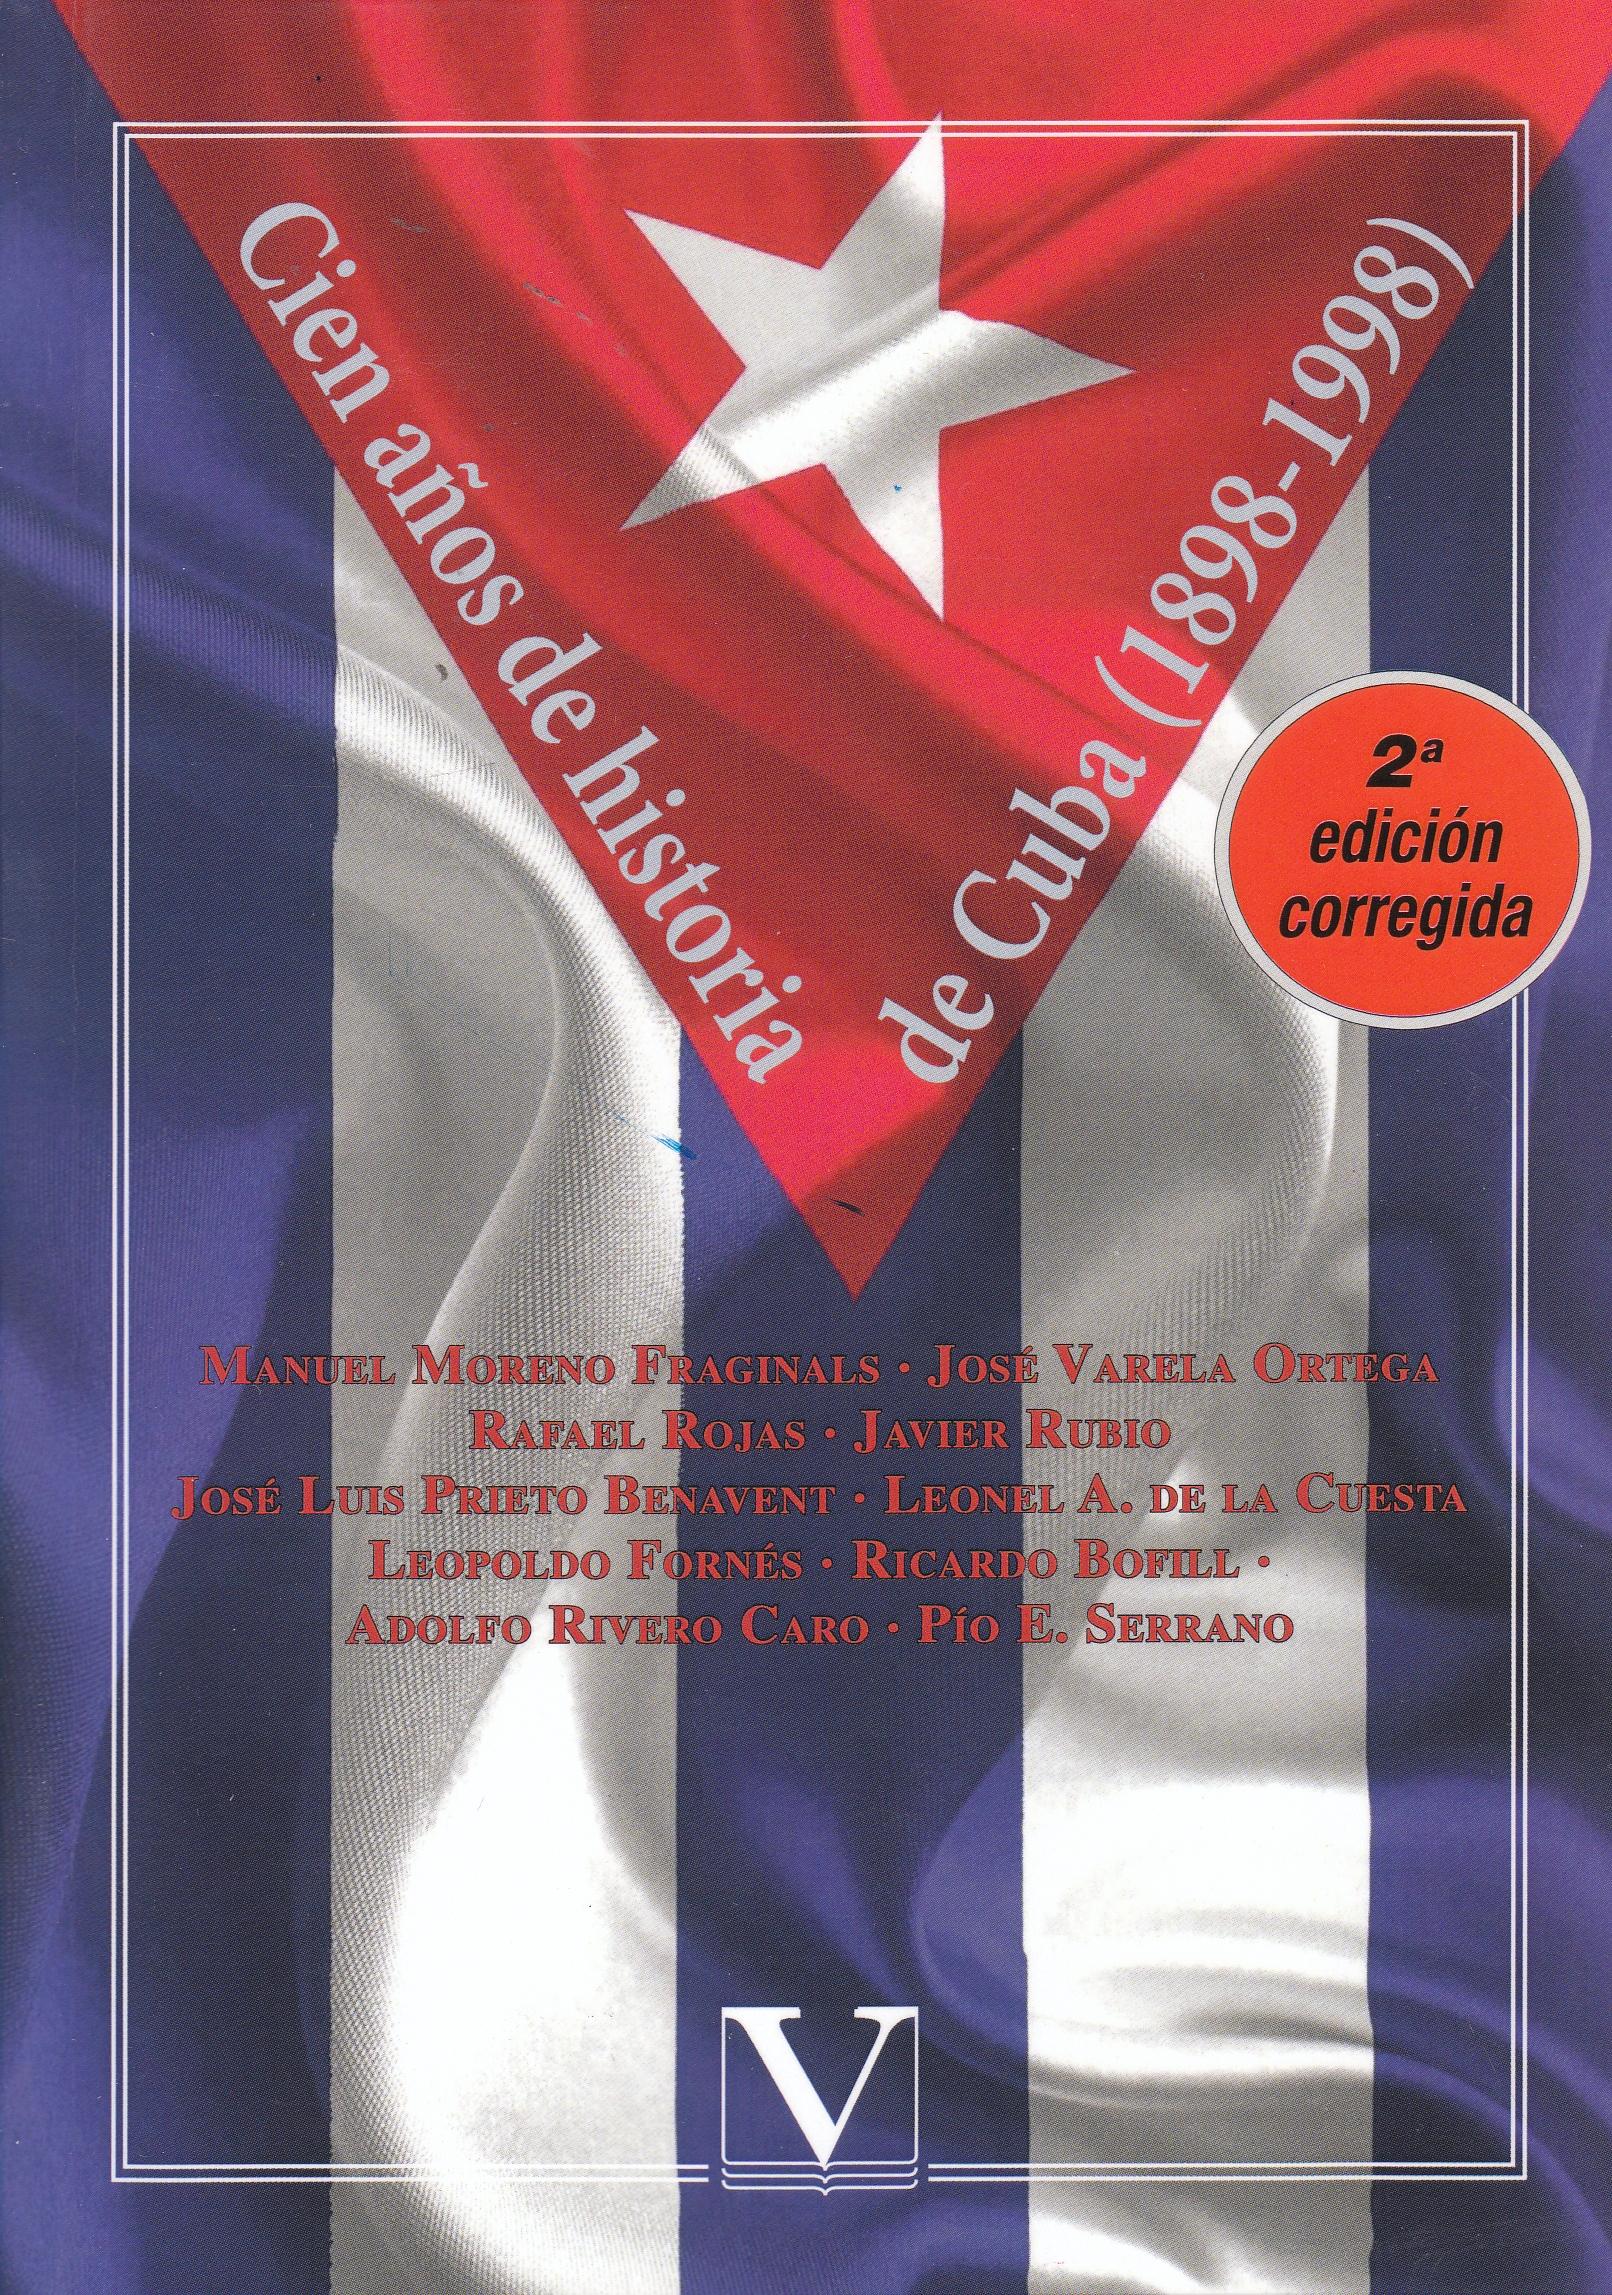 Cien años de historia de Cuba (1898-1998)